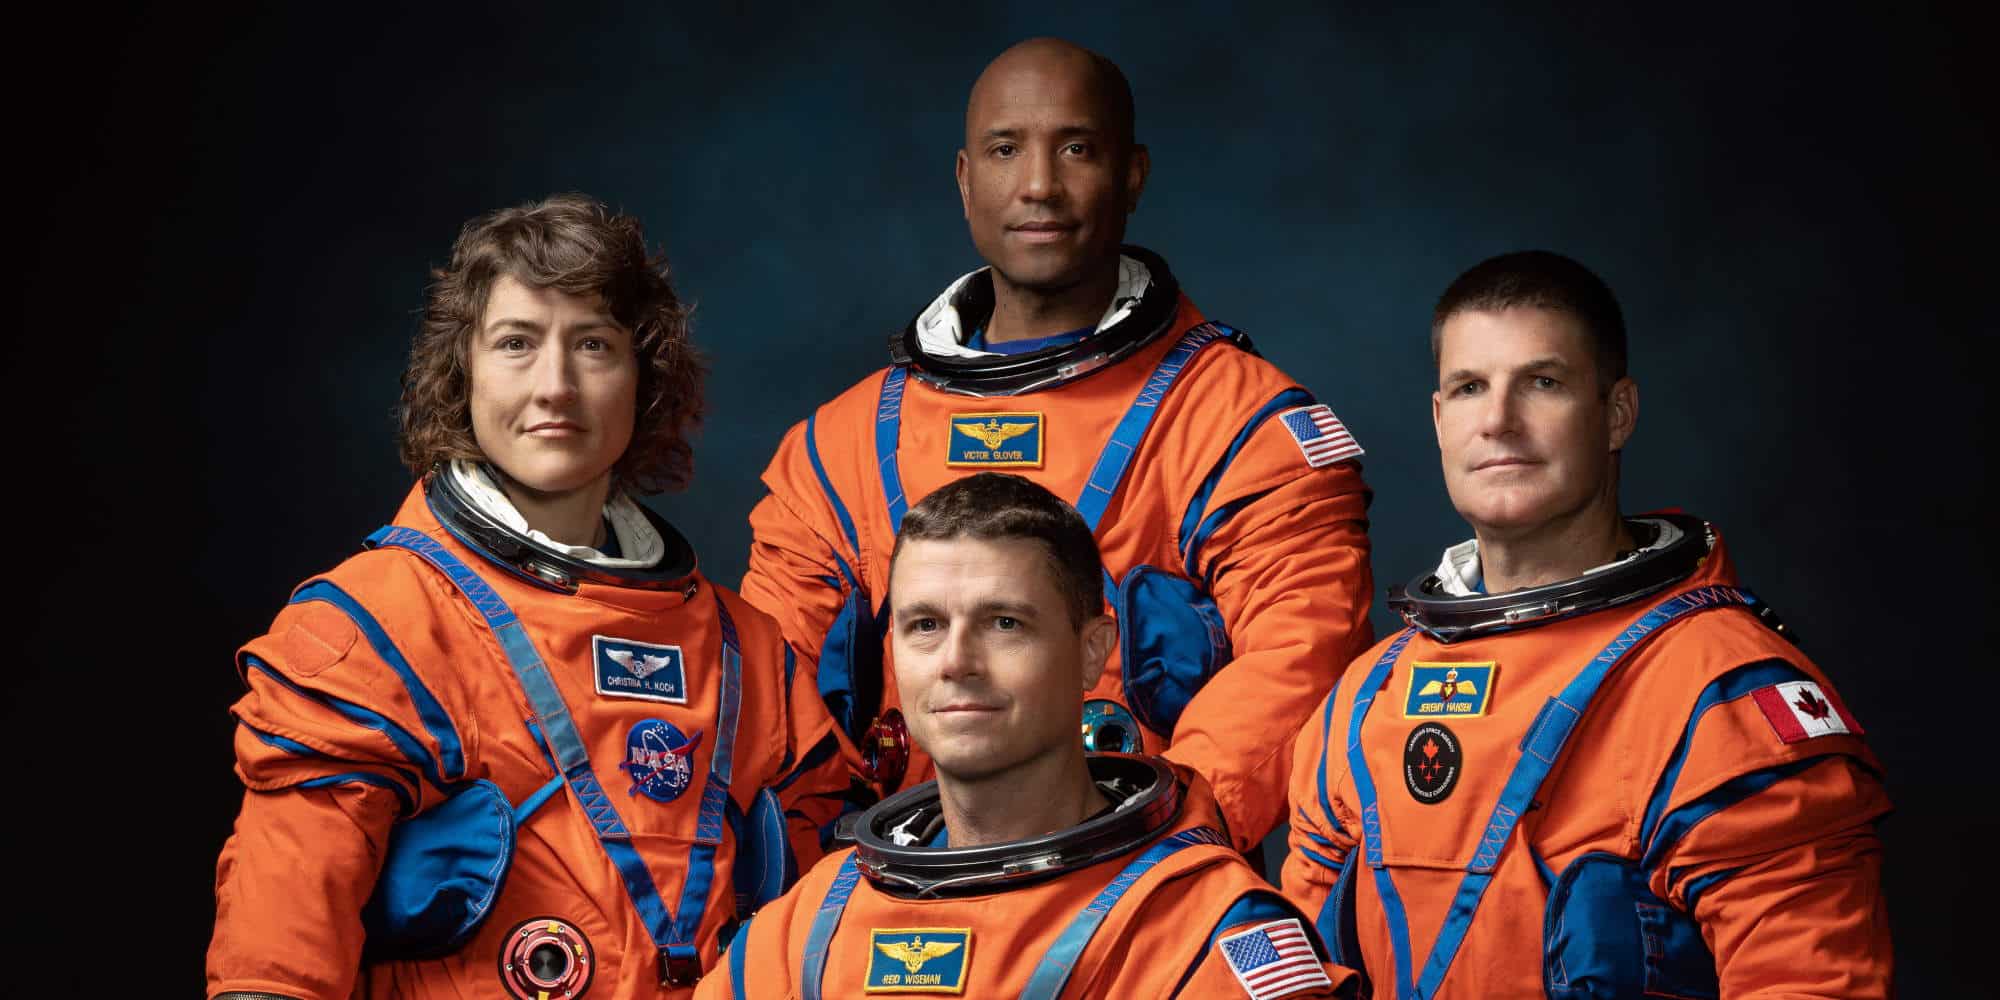 Οι τέσσερις πρώτοι αστροναύτες της αποστολής Artemis II / Φωτογραφία: ΑΠΕ